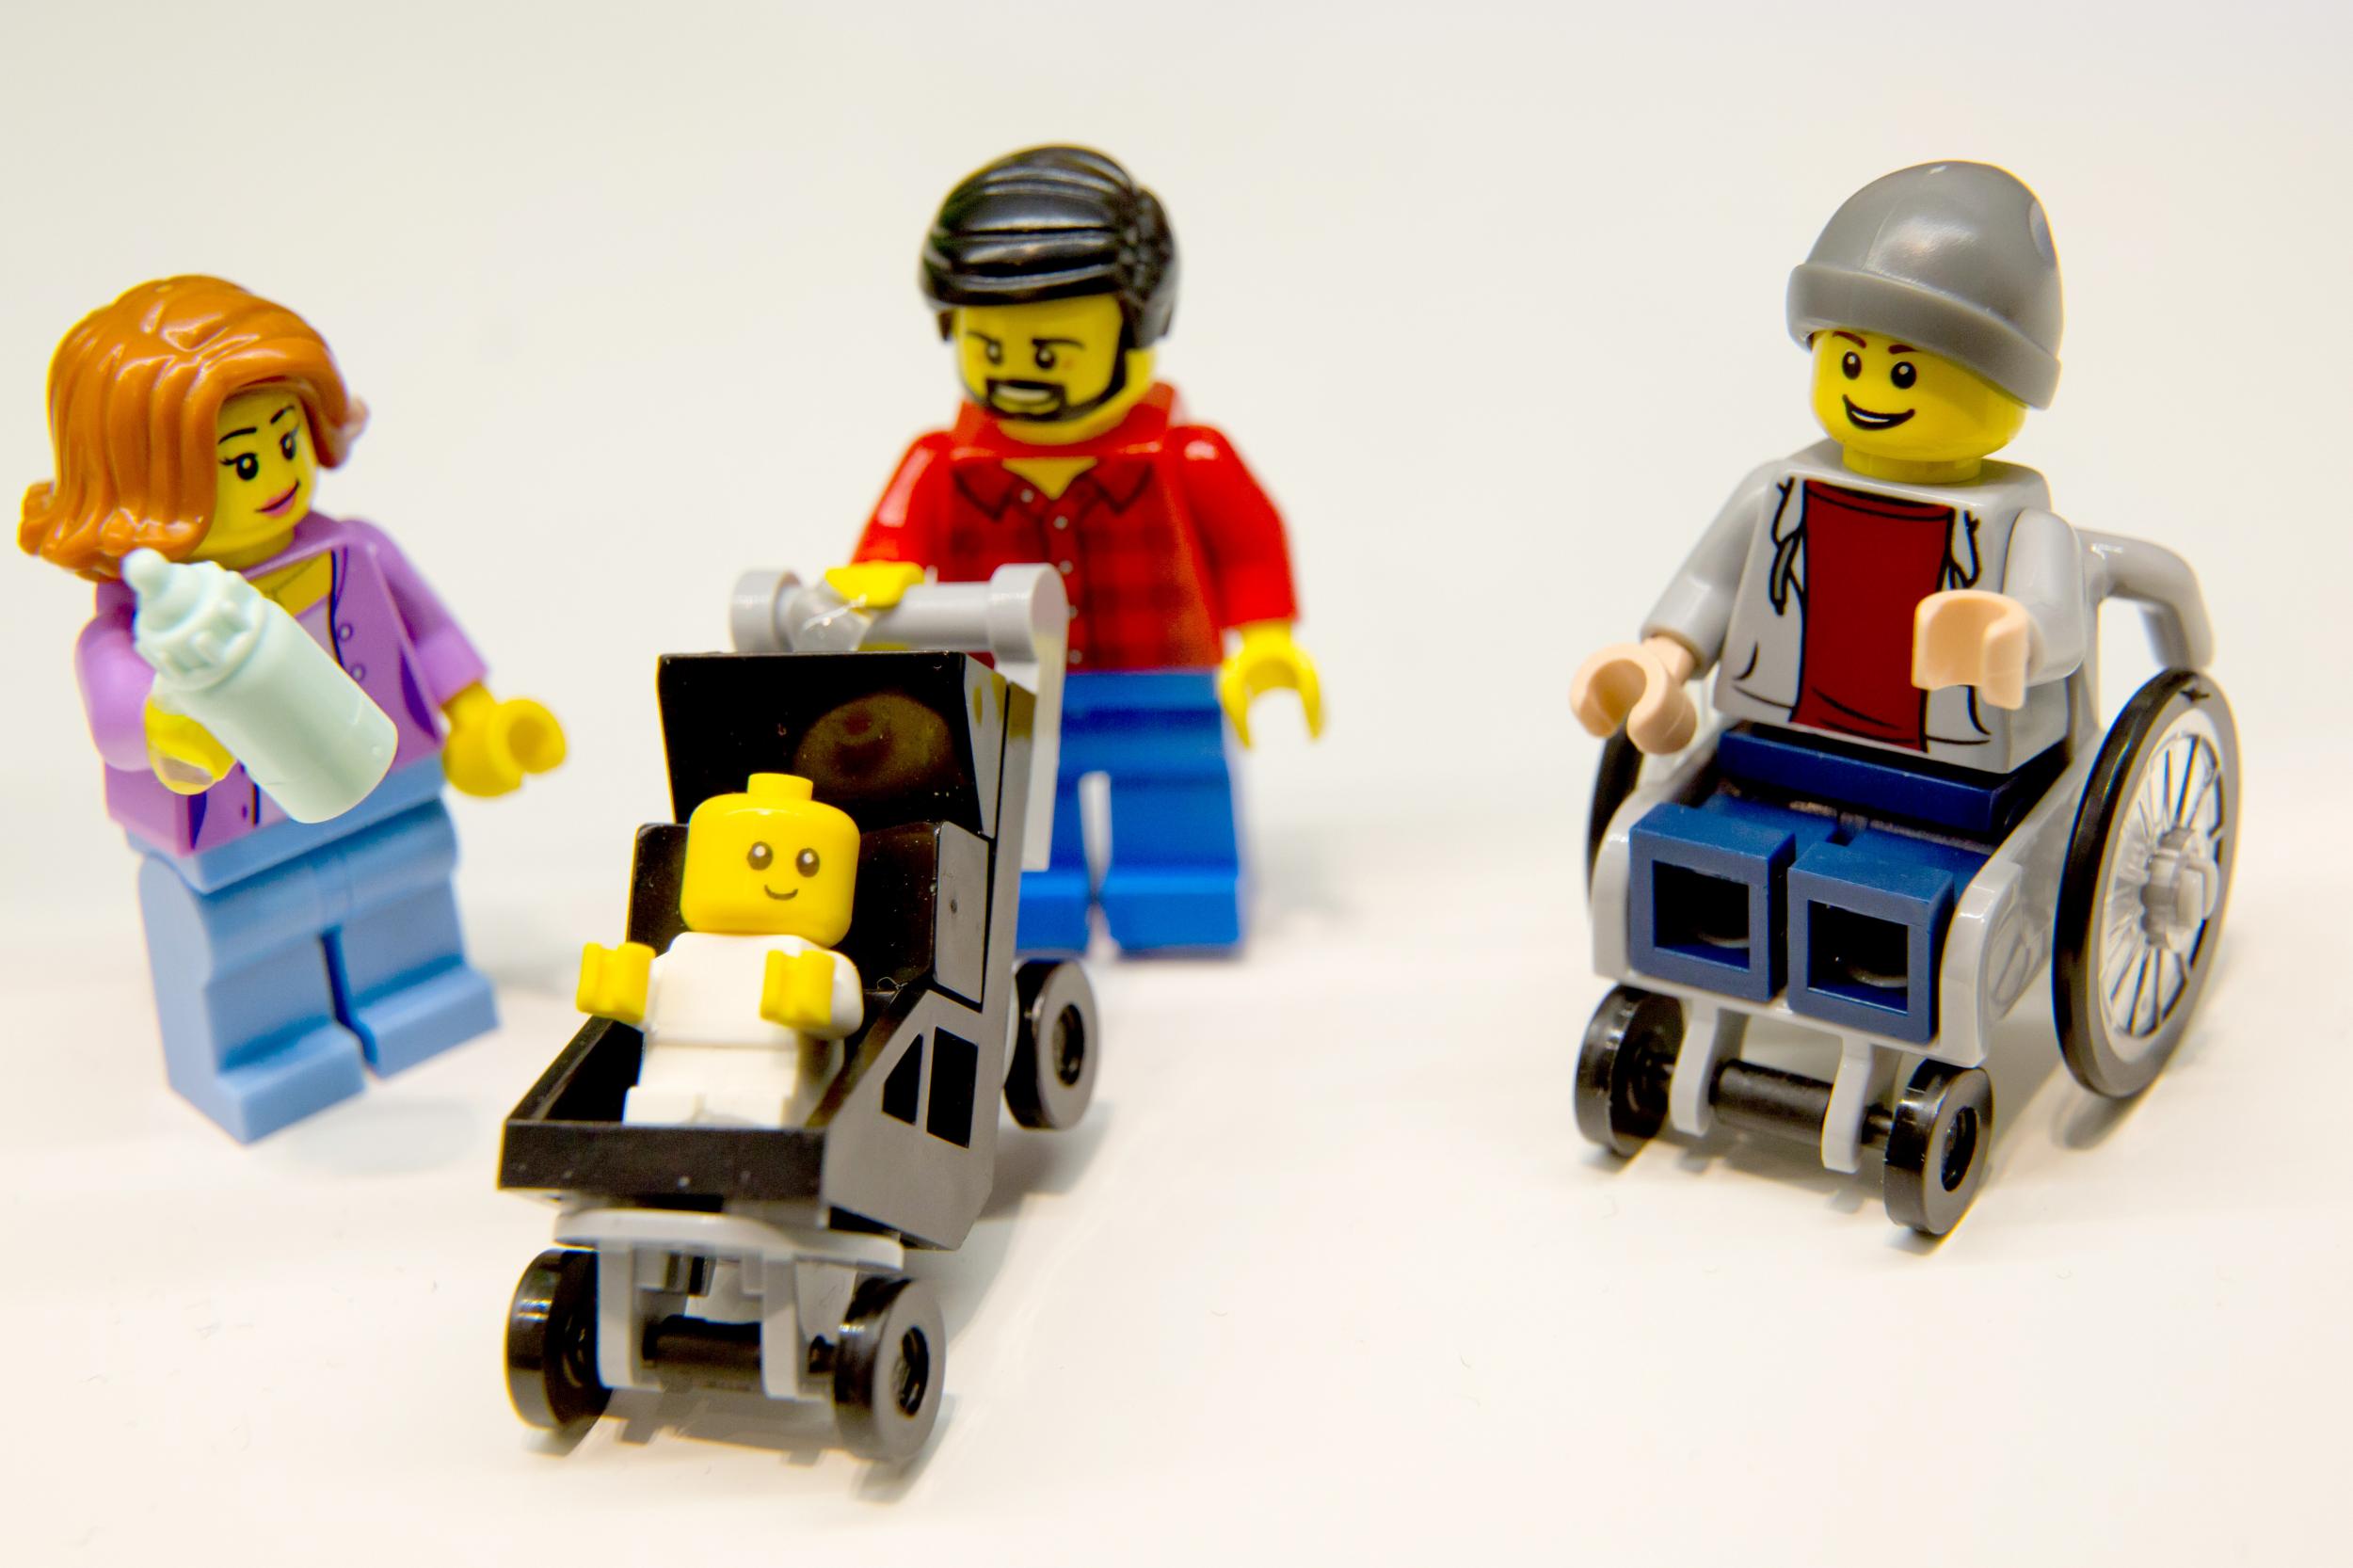 Î‘Ï€Î¿Ï„Î­Î»ÎµÏƒÎ¼Î± ÎµÎ¹ÎºÏŒÎ½Î±Ï‚ Î³Î¹Î± Lego with disability